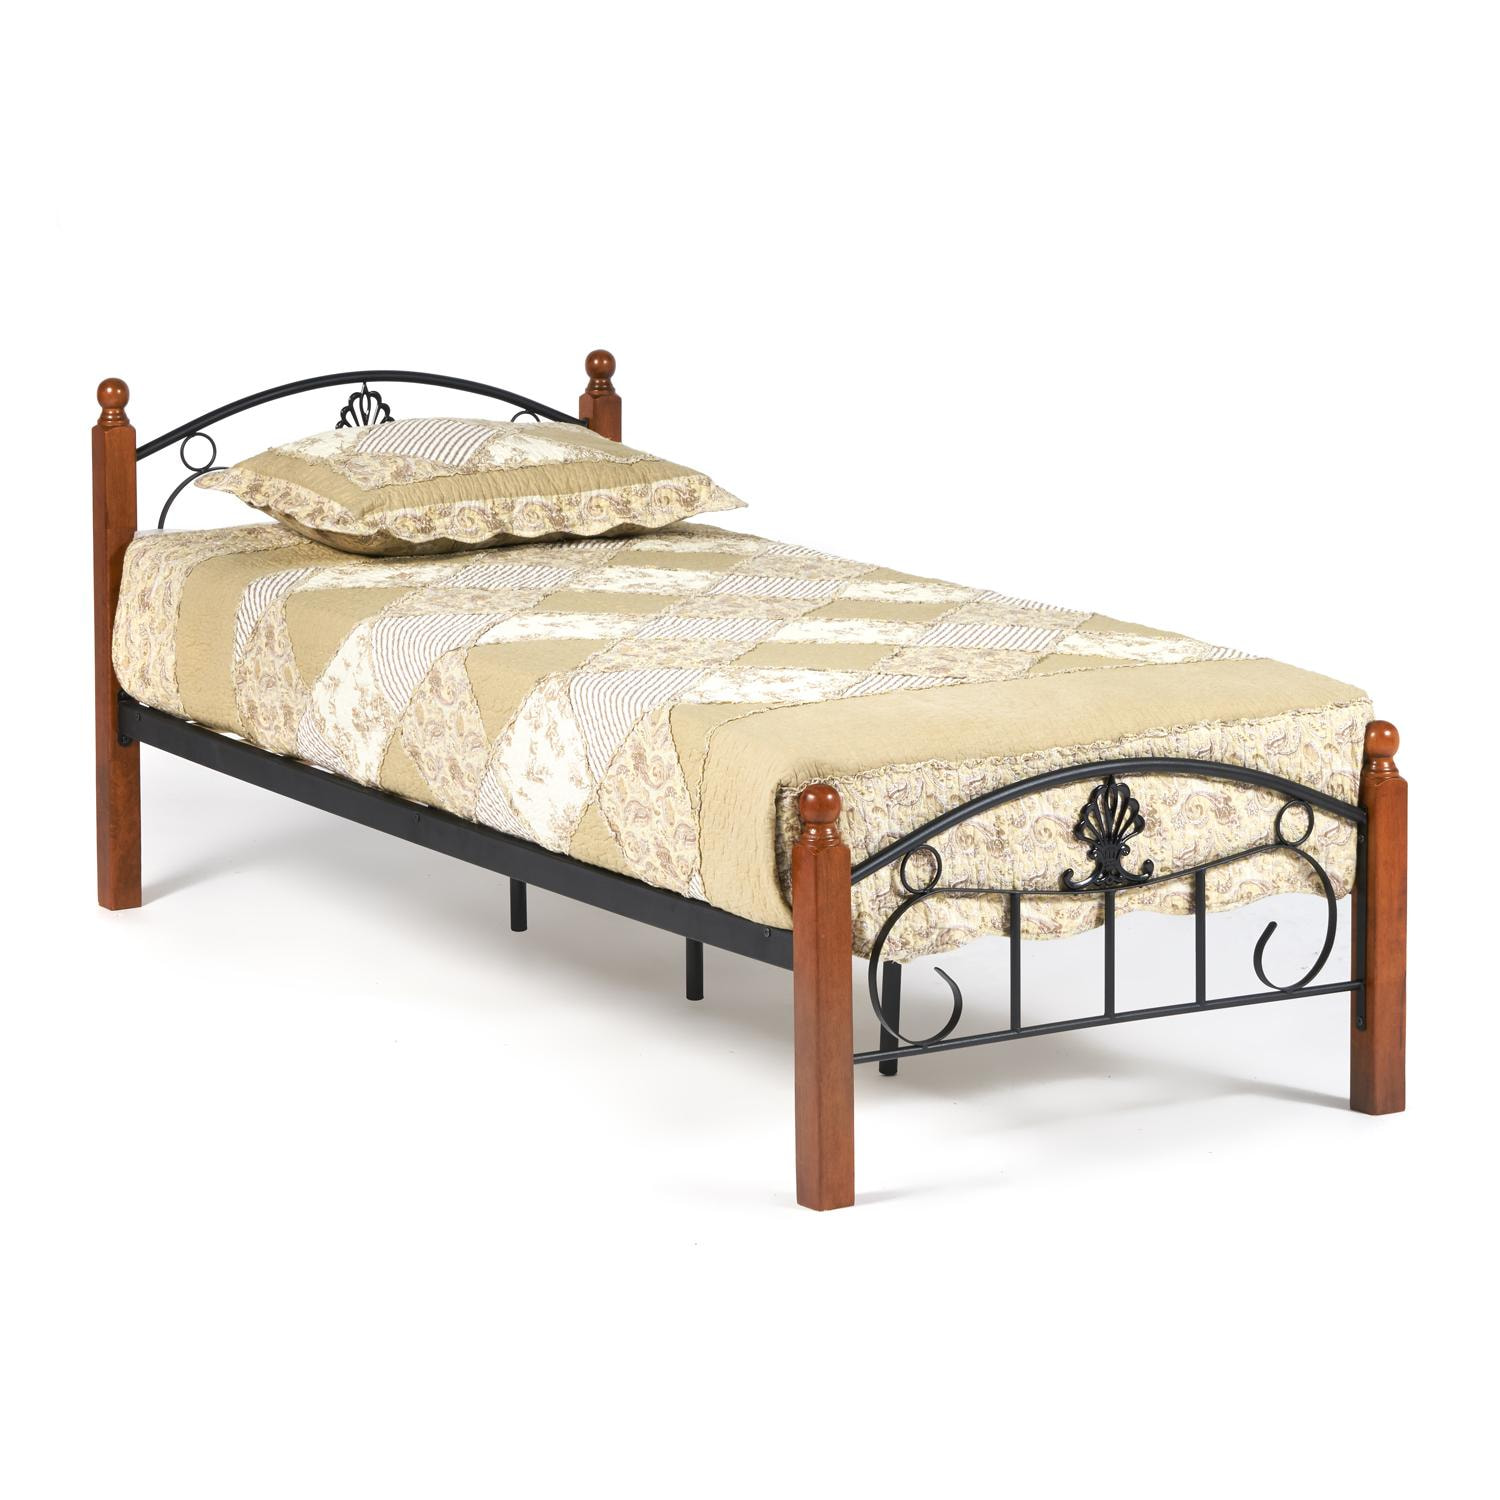 Кровать РУМБА (AT-203)/ RUMBA Wood slat base дерево гевея/металл, 90*200 см (Single bed), красный дуб/черный